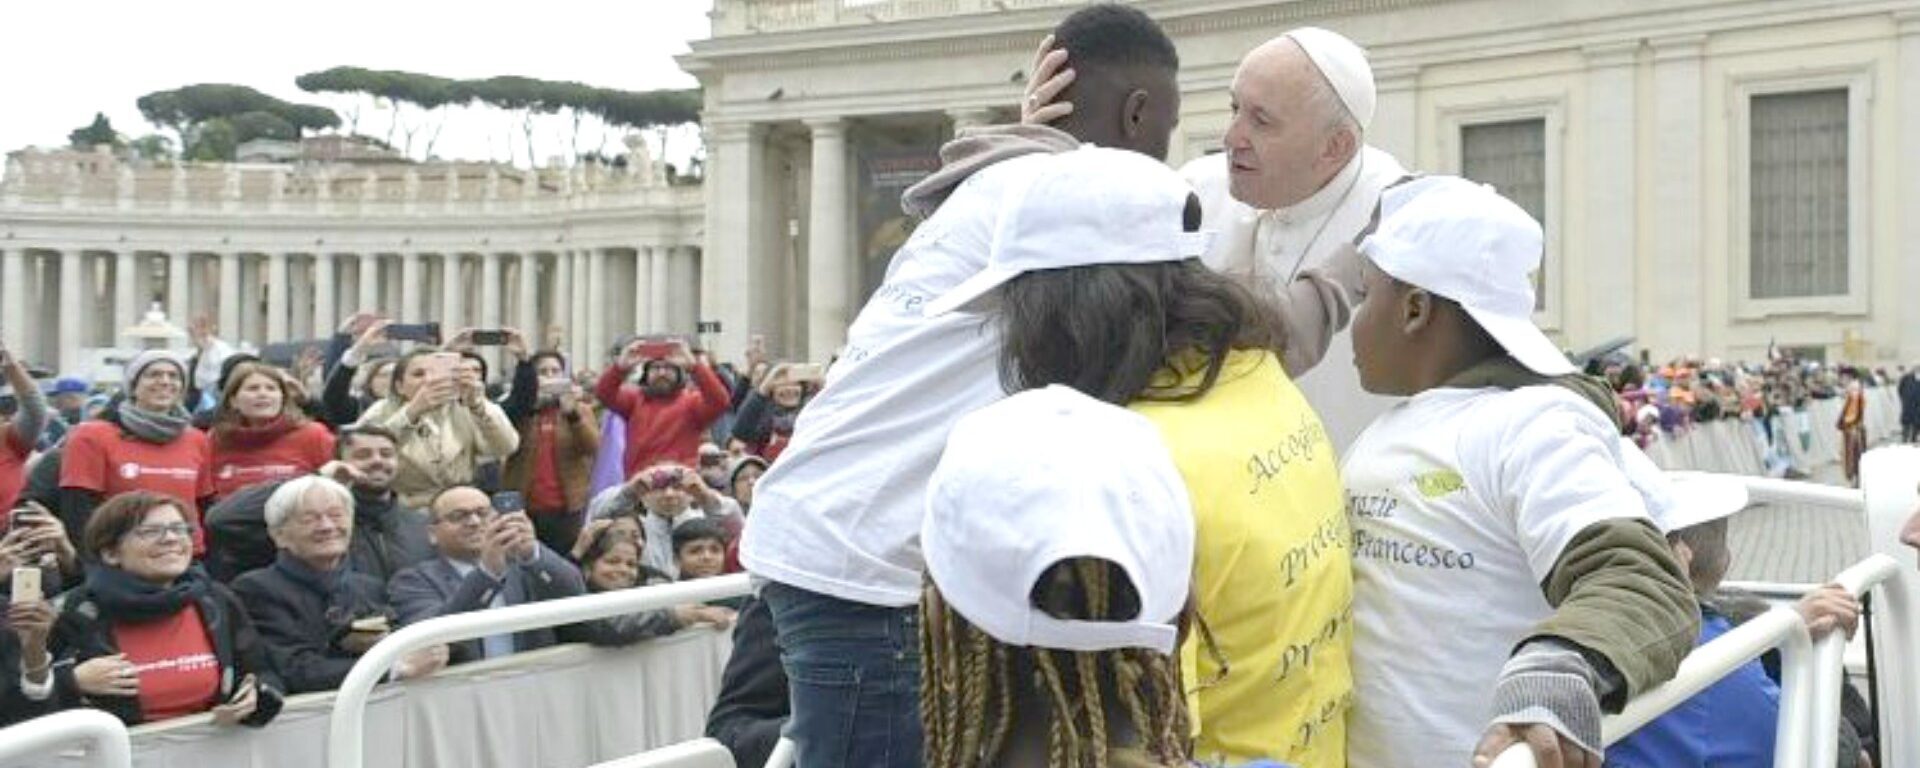 Le pape François sur la Place St-Pierre avec des enfants réfugiés | © Vatican Media